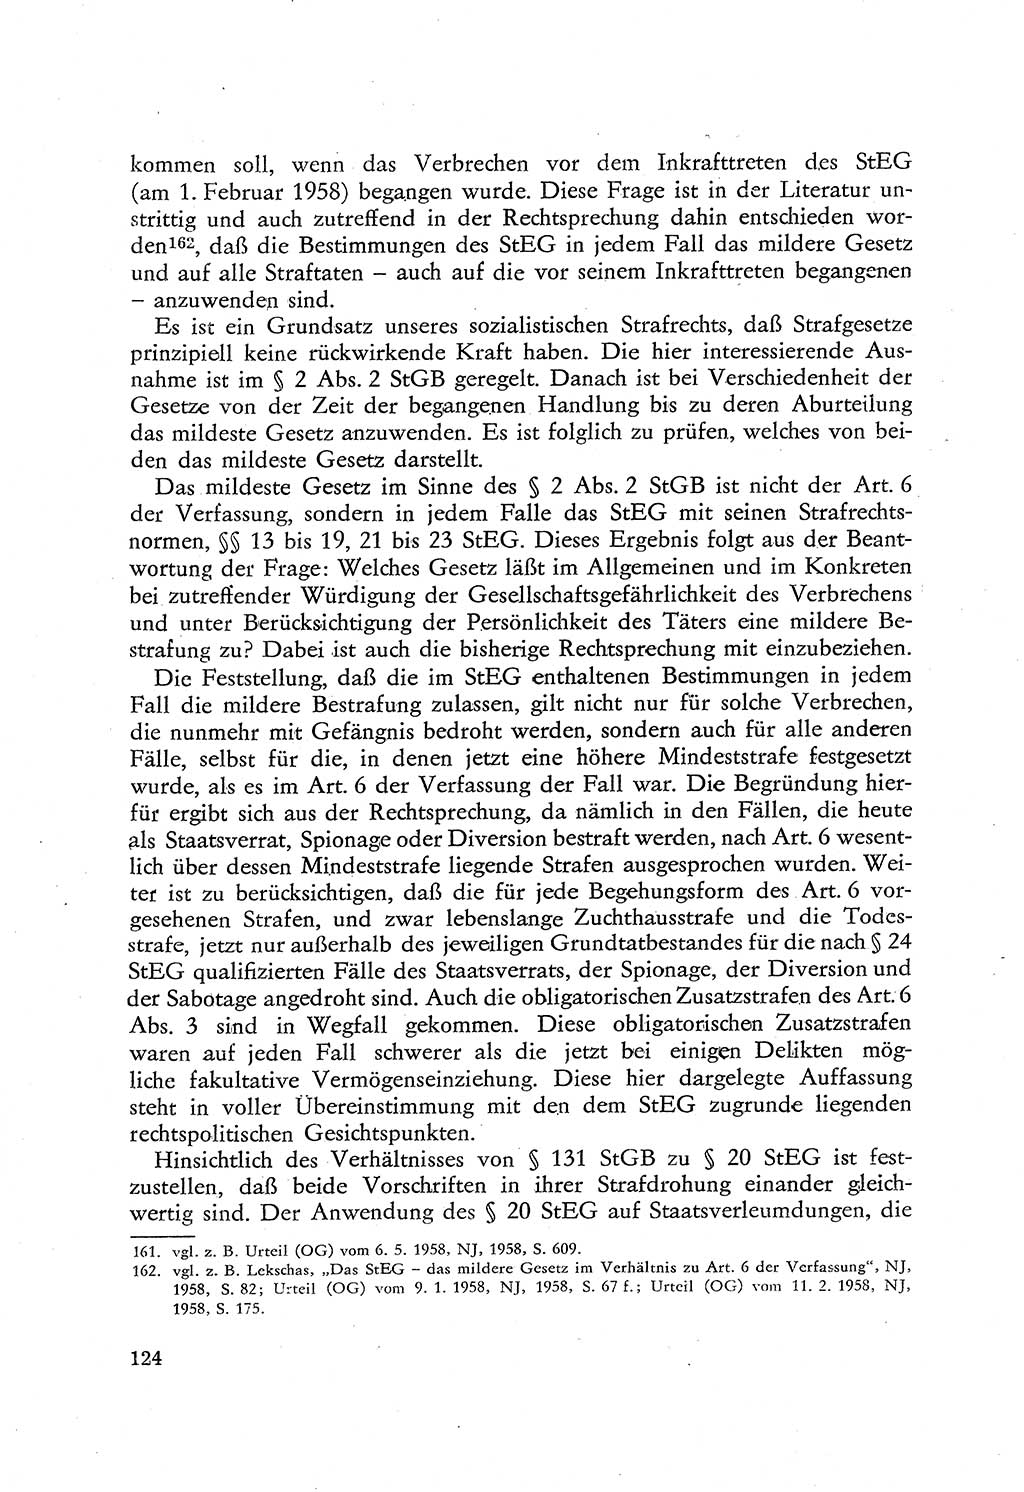 Beiträge zum Strafrecht [Deutsche Demokratische Republik (DDR)], Staatsverbrechen 1959, Seite 124 (Beitr. Strafr. DDR St.-Verbr. 1959, S. 124)